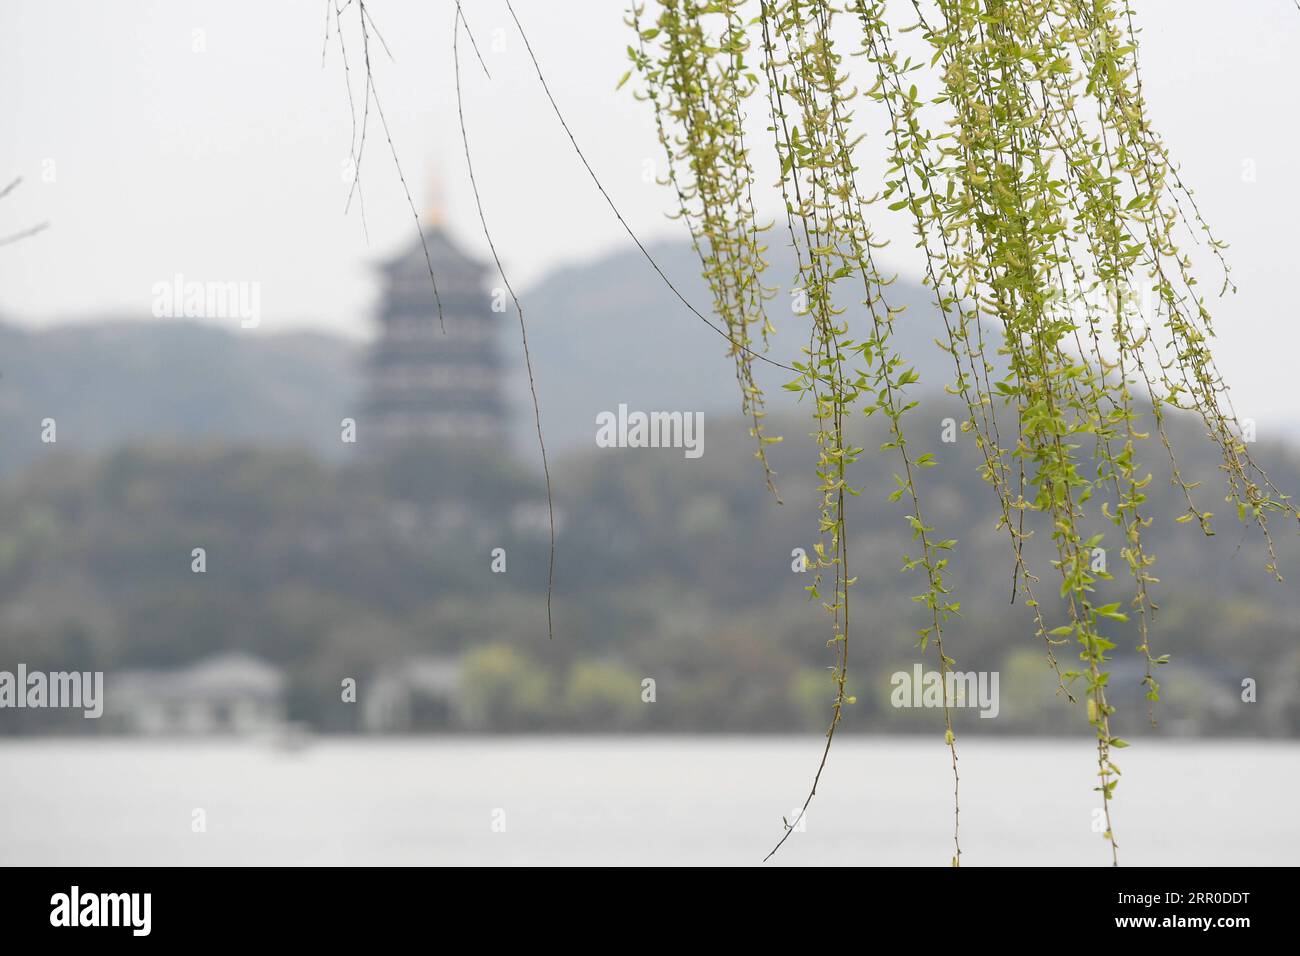 200810 -- HANGZHOU, 10. August 2020 -- Foto aufgenommen am 12. März 2020 zeigt Weidenzweige am Westsee in Hangzhou, der ostchinesischen Provinz Zhejiang. Die Kulturlandschaft des West Lake in Hangzhou, umrahmt von wolkenbedeckten Hügeln auf drei Seiten und aufgeteilt in mehrere Teile durch malerische Dämme, präsentiert eine zarte Landschaft mit sich überlappenden Gipfeln und verstreuten Tempeln, Pagoden, Pavillons, Gärten, Zierbäumen, und künstliche Inseln, die der Stadt Hangzhou Schönheit verleihen. Es wurde vom Weltkulturerbe-Komitee in die UNESCO-Liste des Weltkulturerbes als Kulturgut aufgenommen Stockfoto